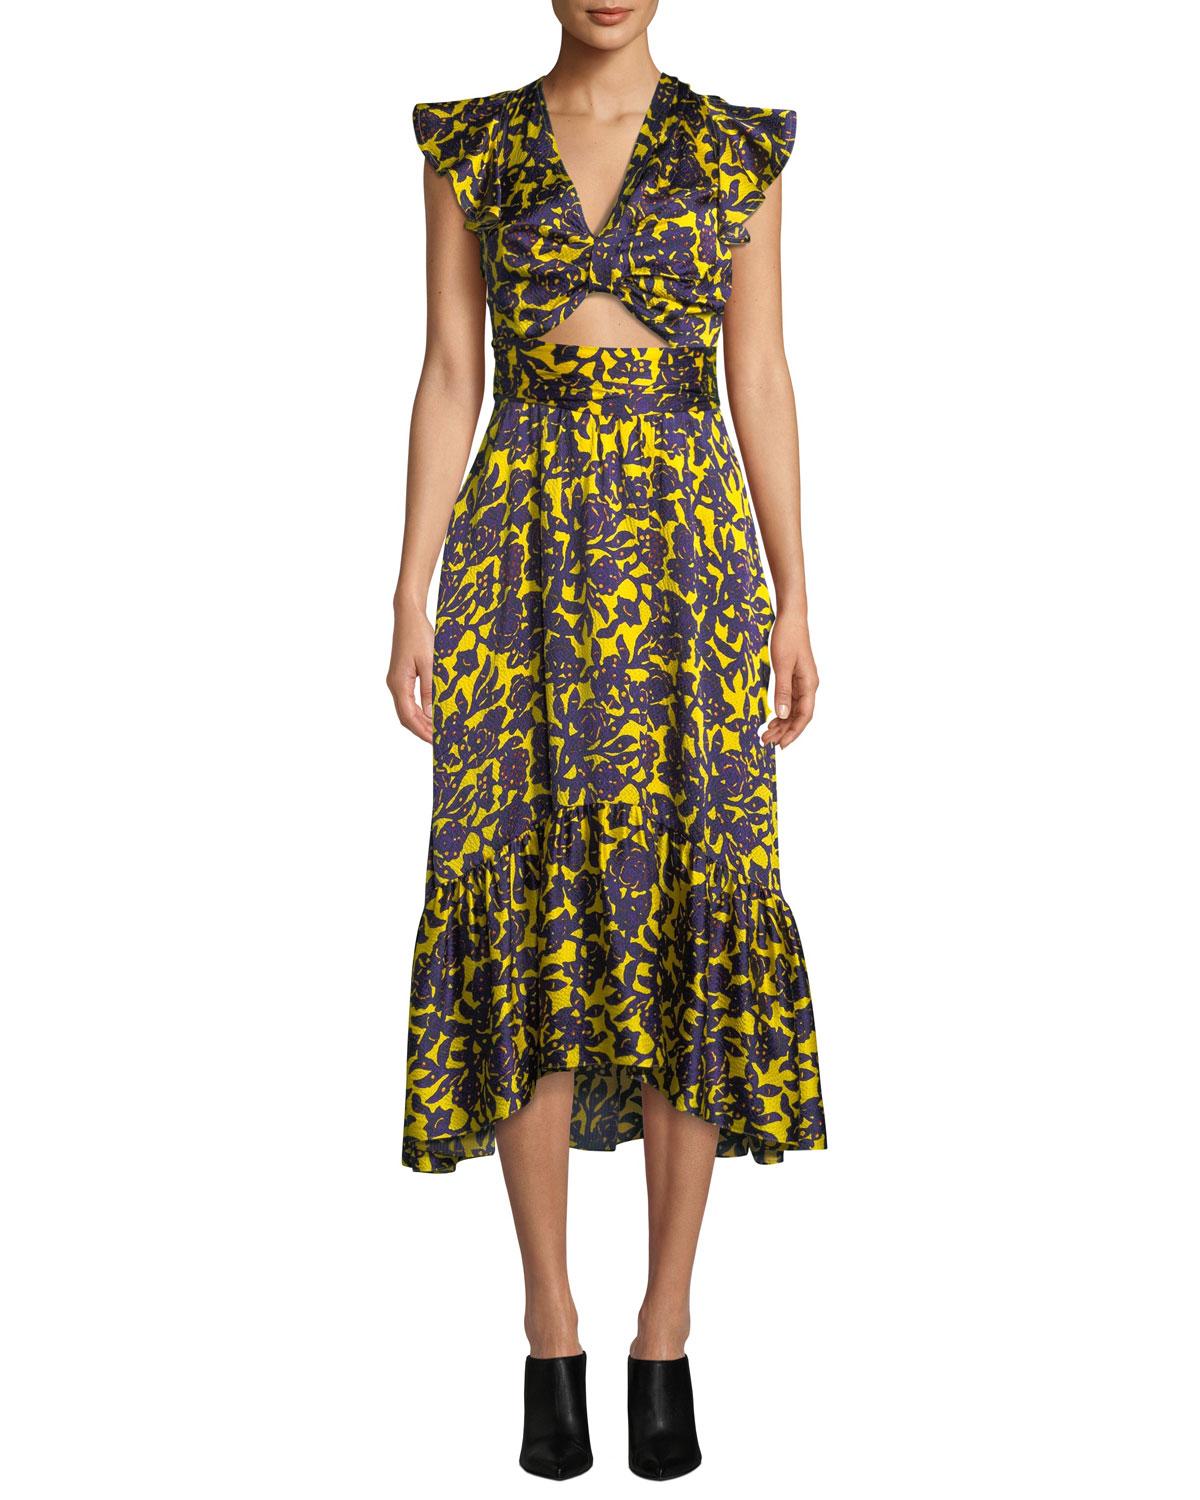 Lyst A.L.C. Valencia Cutout Floralprint Silk Dress in Yellow